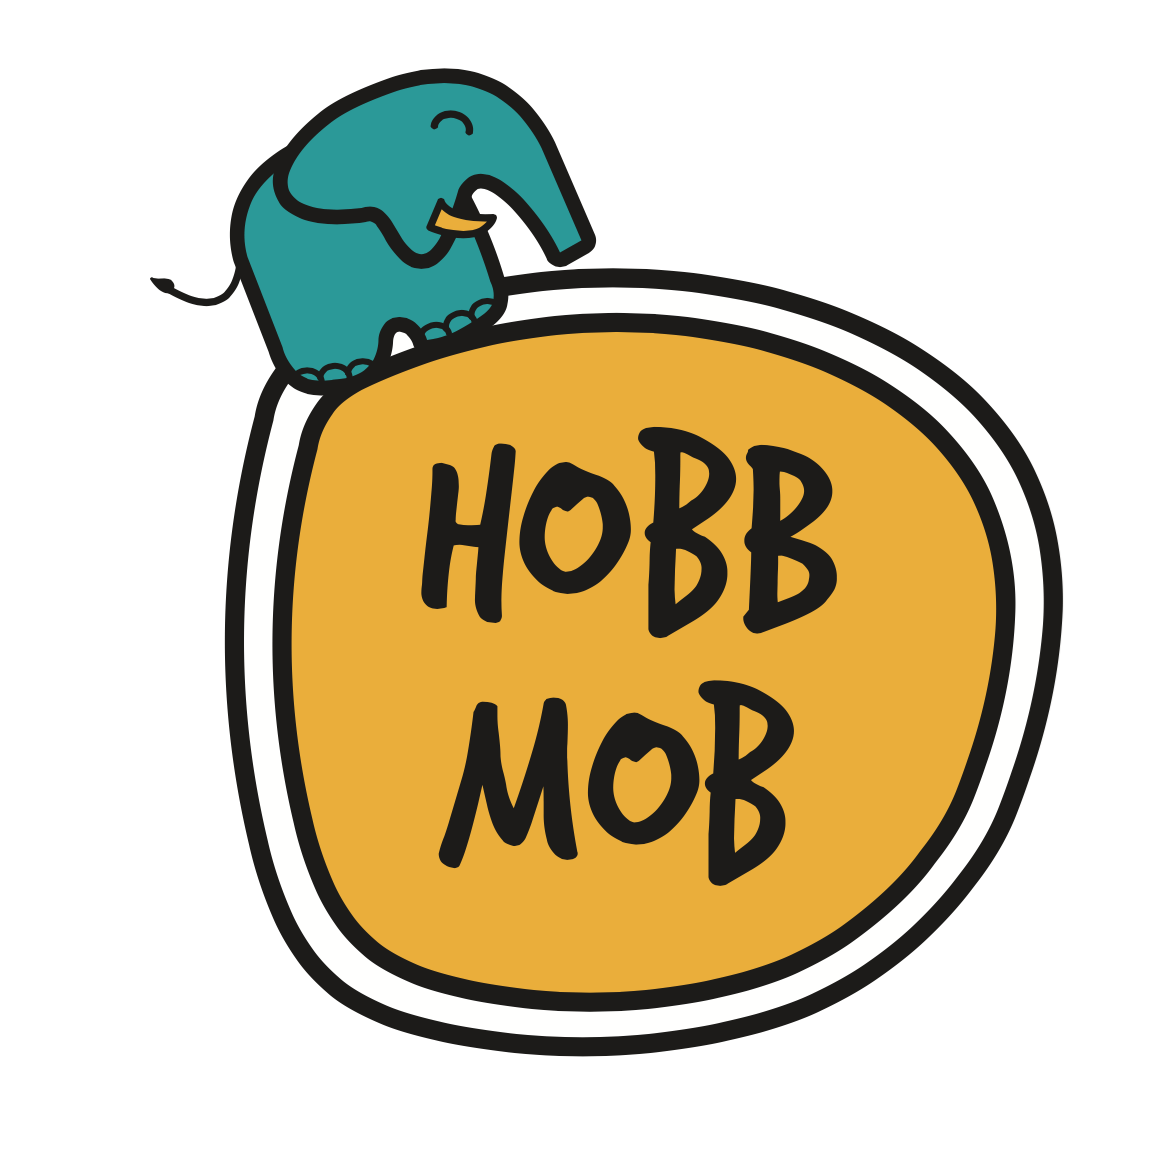 Hobbmob 